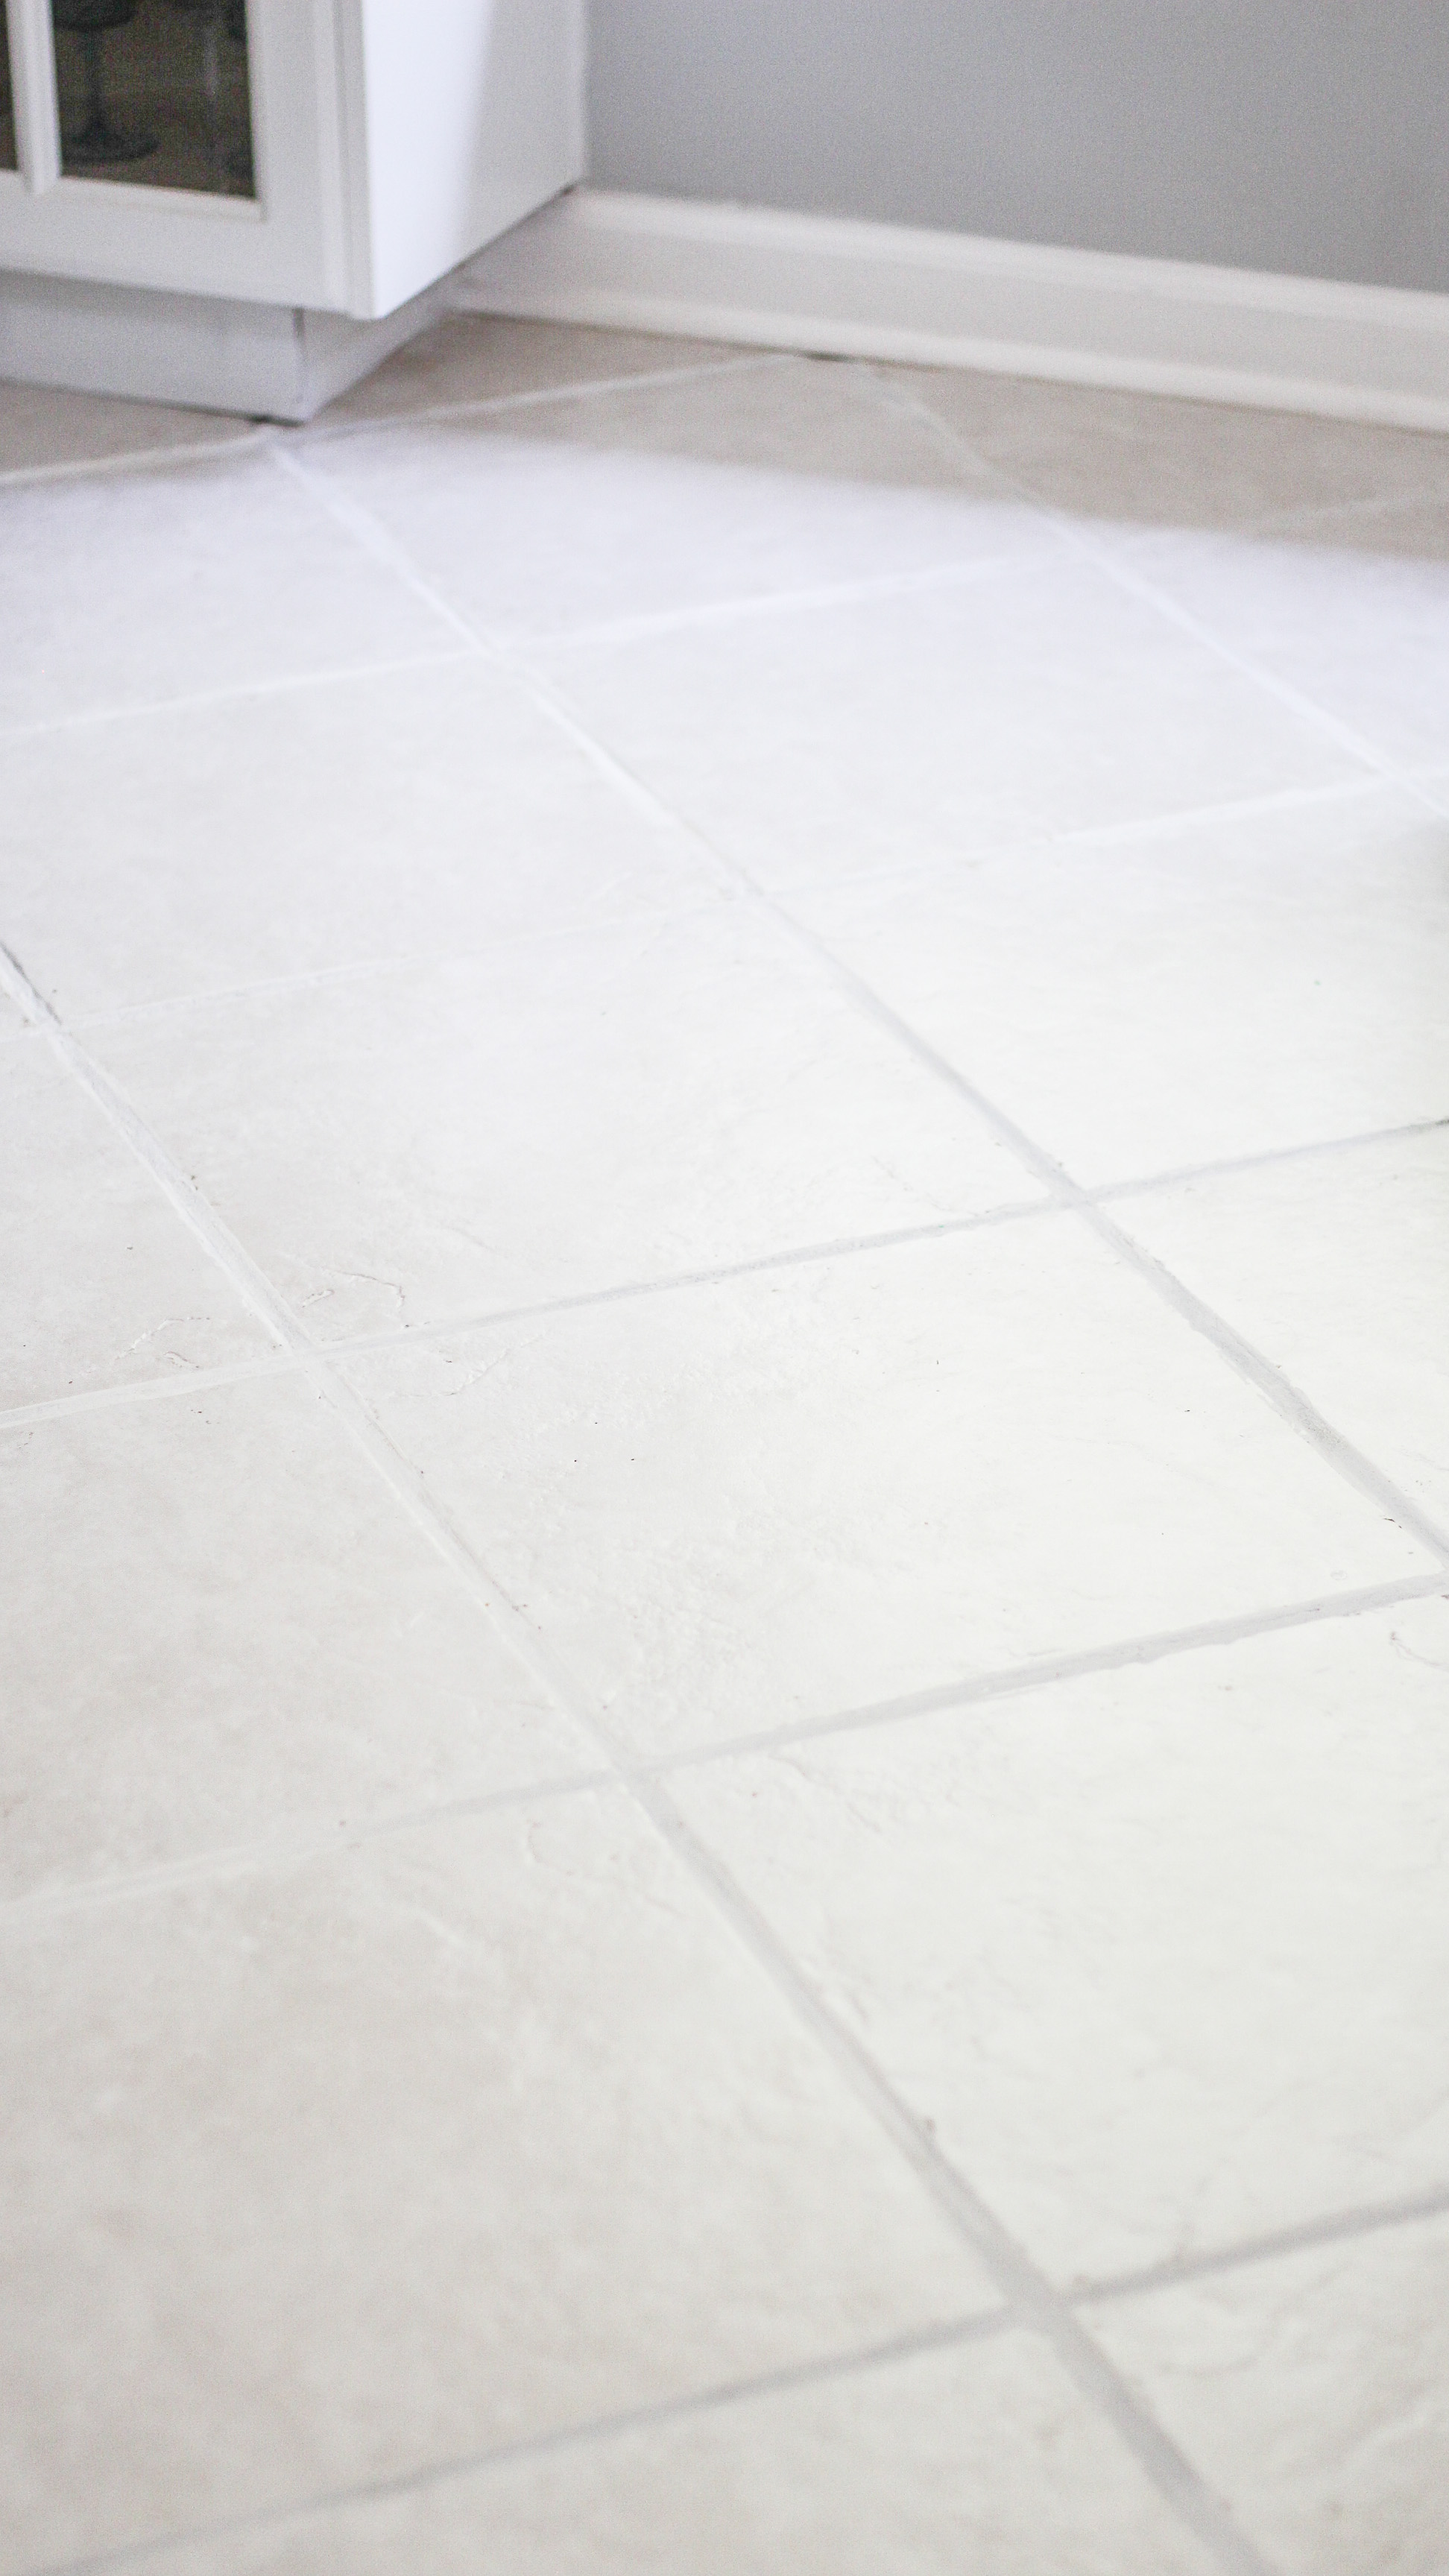 Neglected Tile Flooring, Best Type Of Cleaner For Ceramic Tile Floors